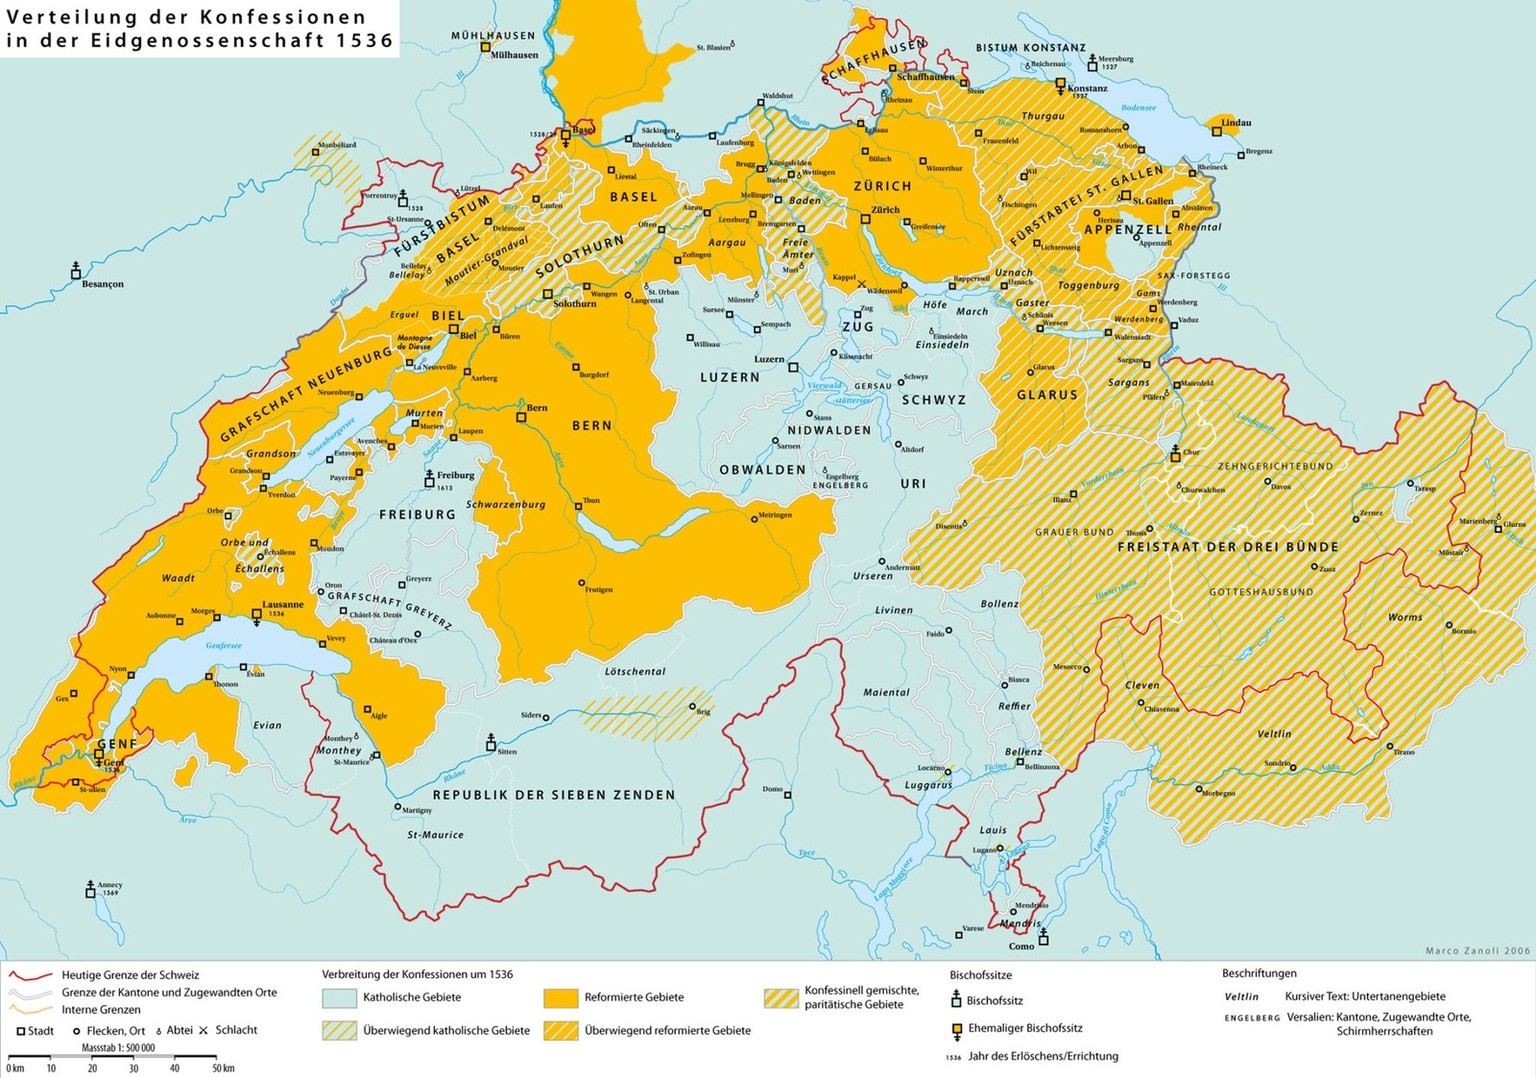 Die konfessionelle Teilung der schweizerischen Eidgenossenschaft um 1536 durch die Reformation.
https://upload.wikimedia.org/wikipedia/commons/7/79/Religion_map_of_Switzerland_in_1536_-_de.png